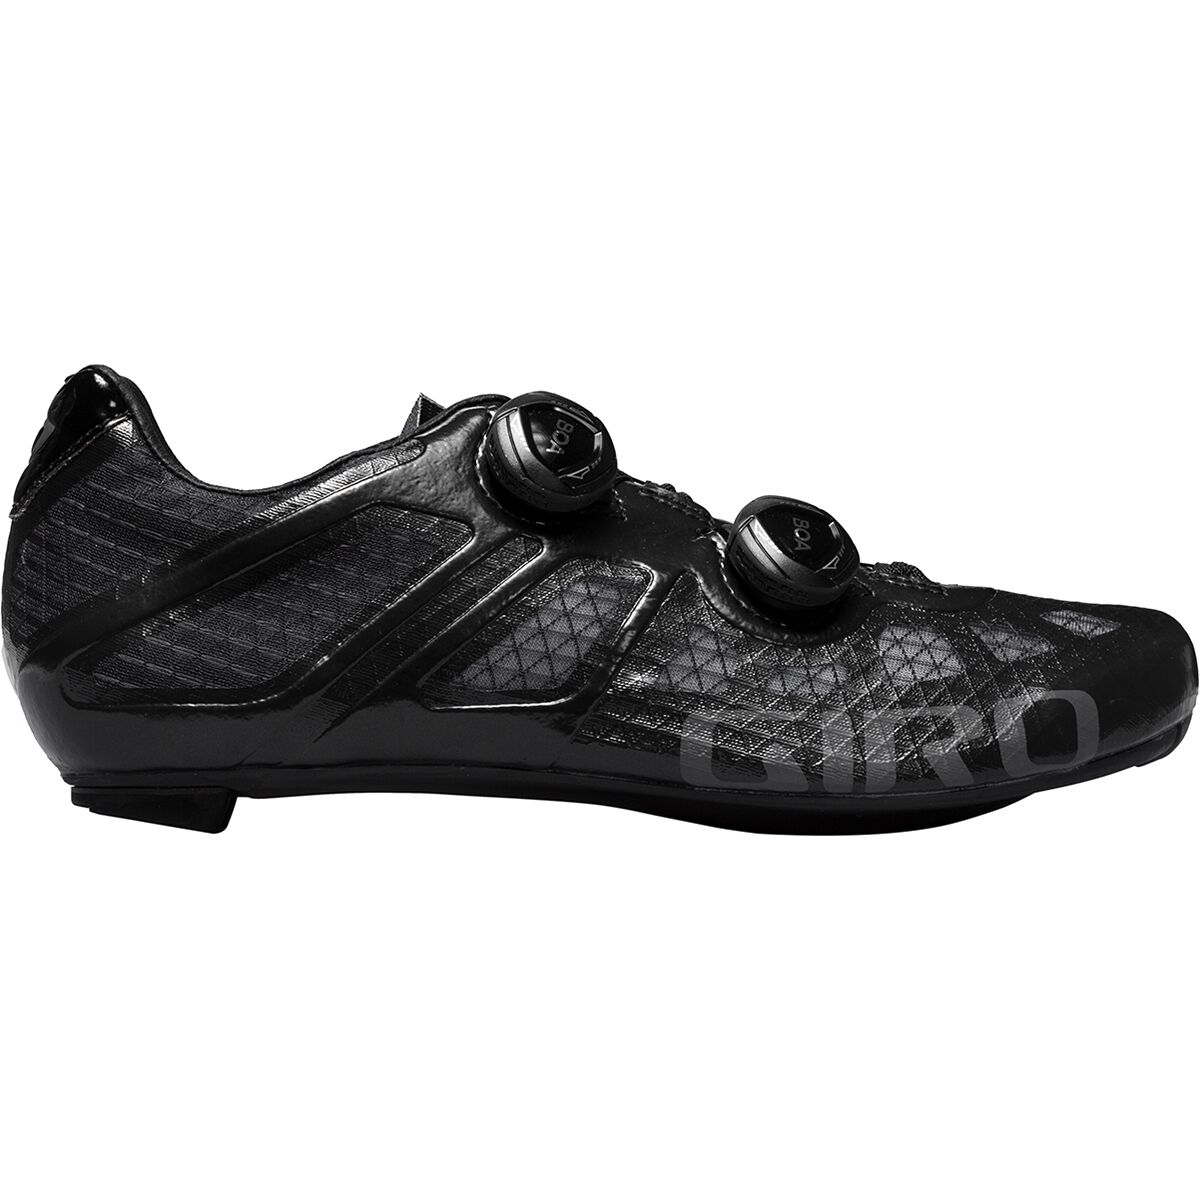 Giro Imperial Cycling Shoe - Men's